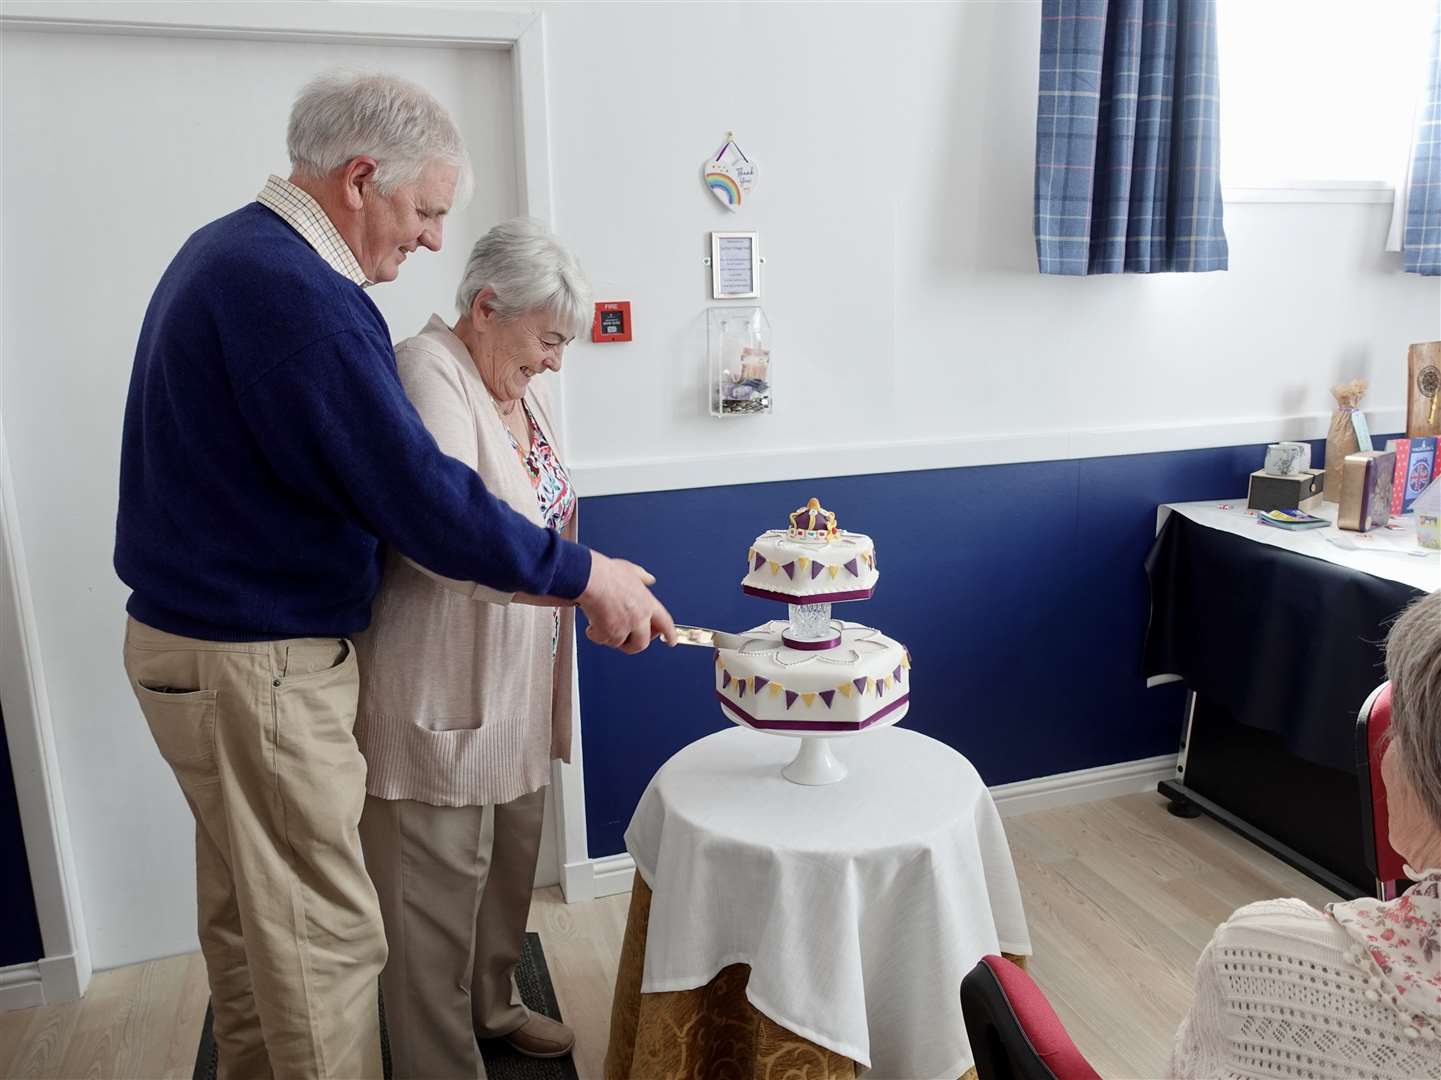 Horace and Linda Levack cutting the celebration cake